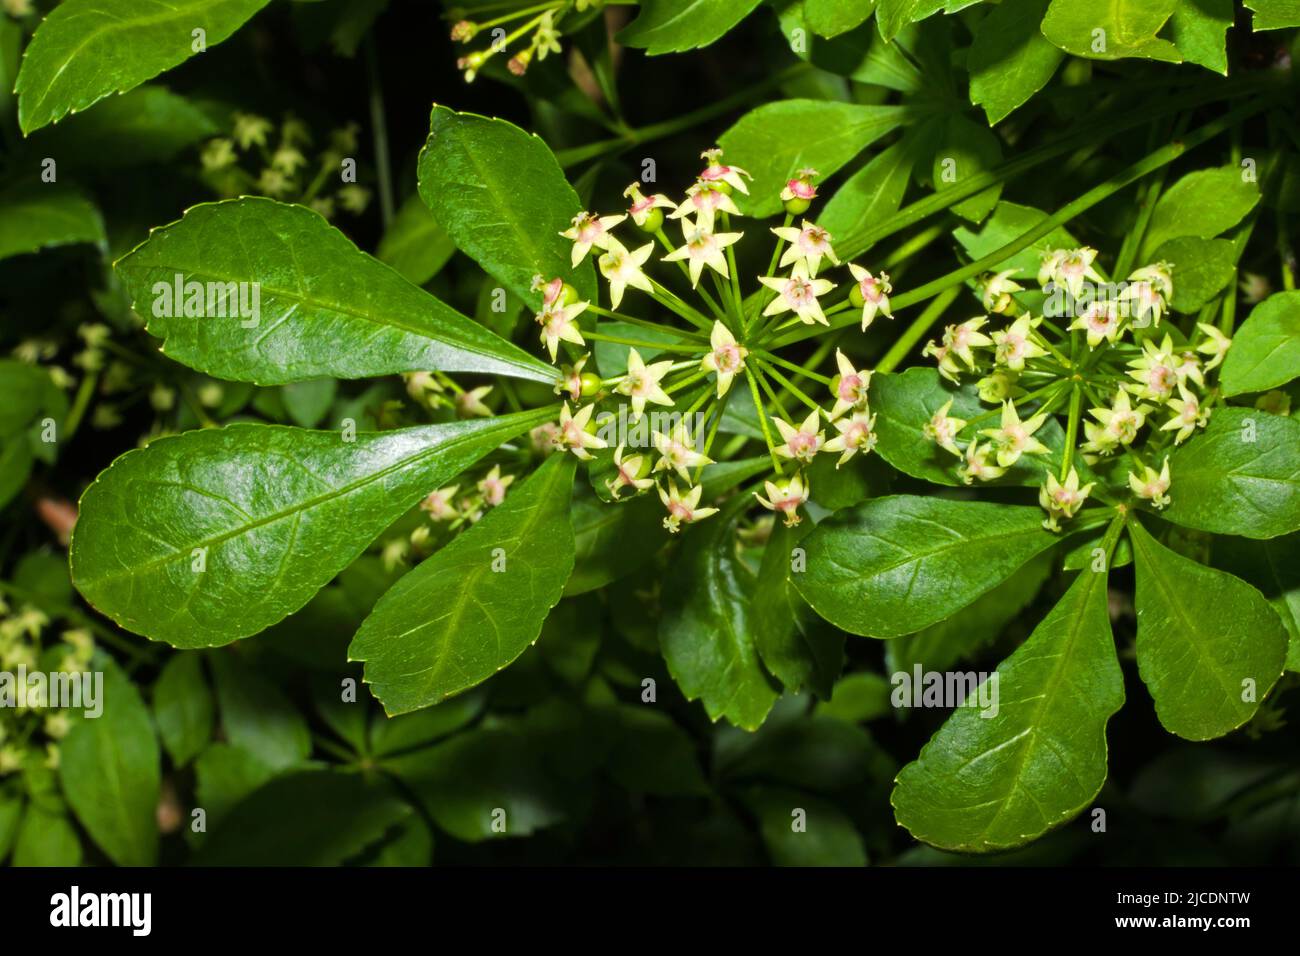 Eleutherococcus sieboldianus (aralia à cinq feuilles) est un arbuste à feuilles caduques épineuses originaire de la province d'Anhui en Chine, mais introduit ailleurs pour les jardins. Banque D'Images